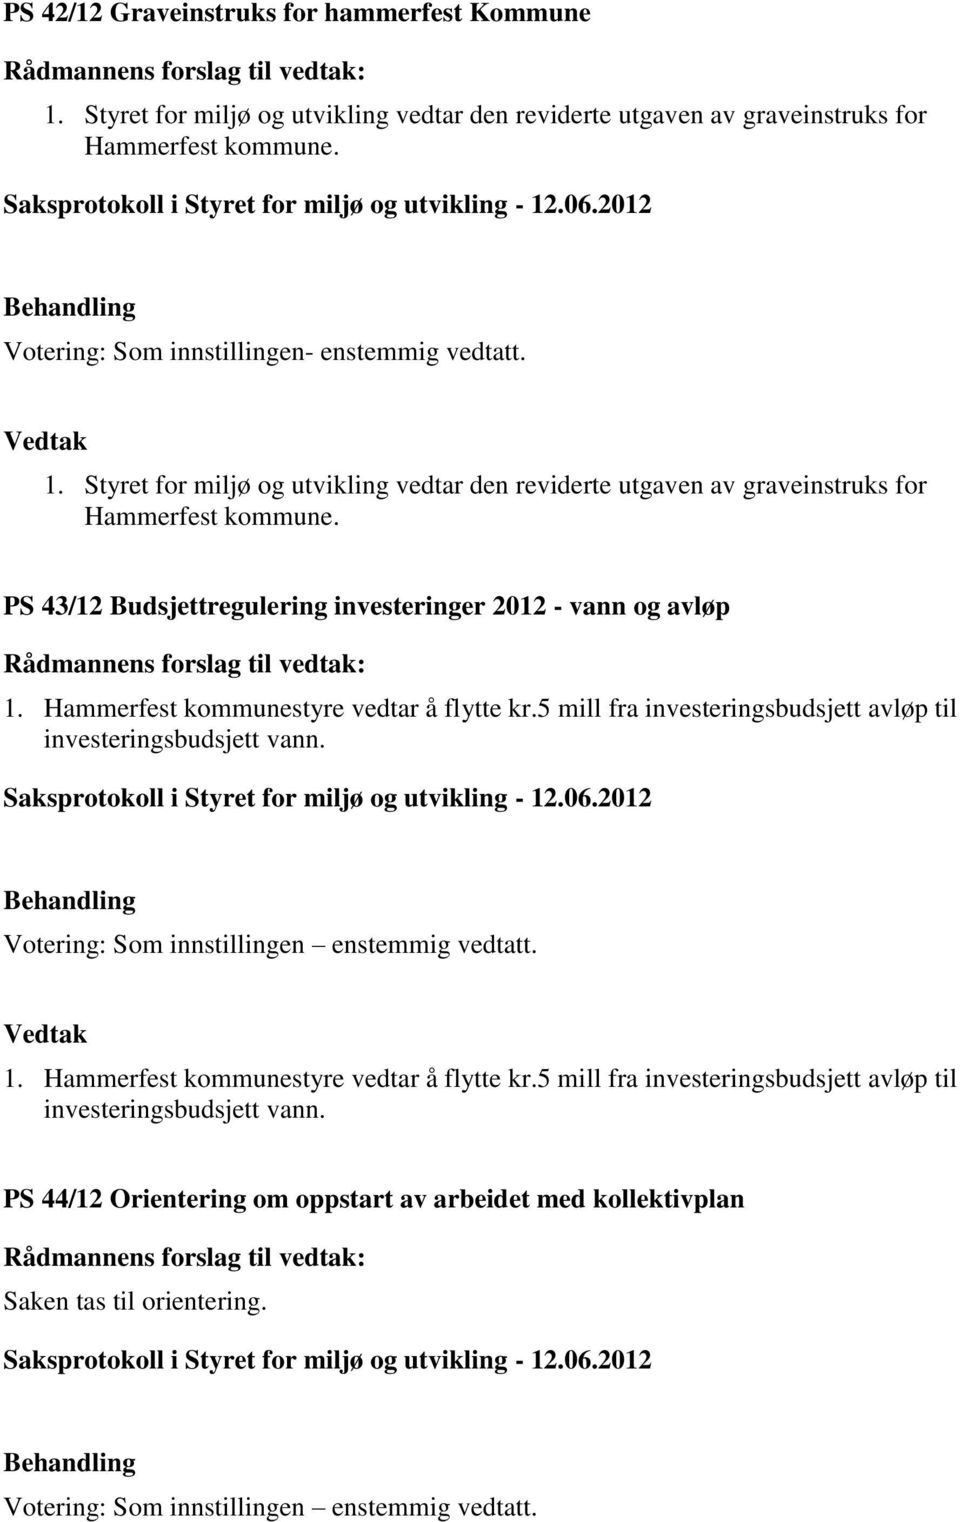 PS 43/12 Budsjettregulering investeringer 2012 - vann og avløp 1. Hammerfest kommunestyre vedtar å flytte kr.